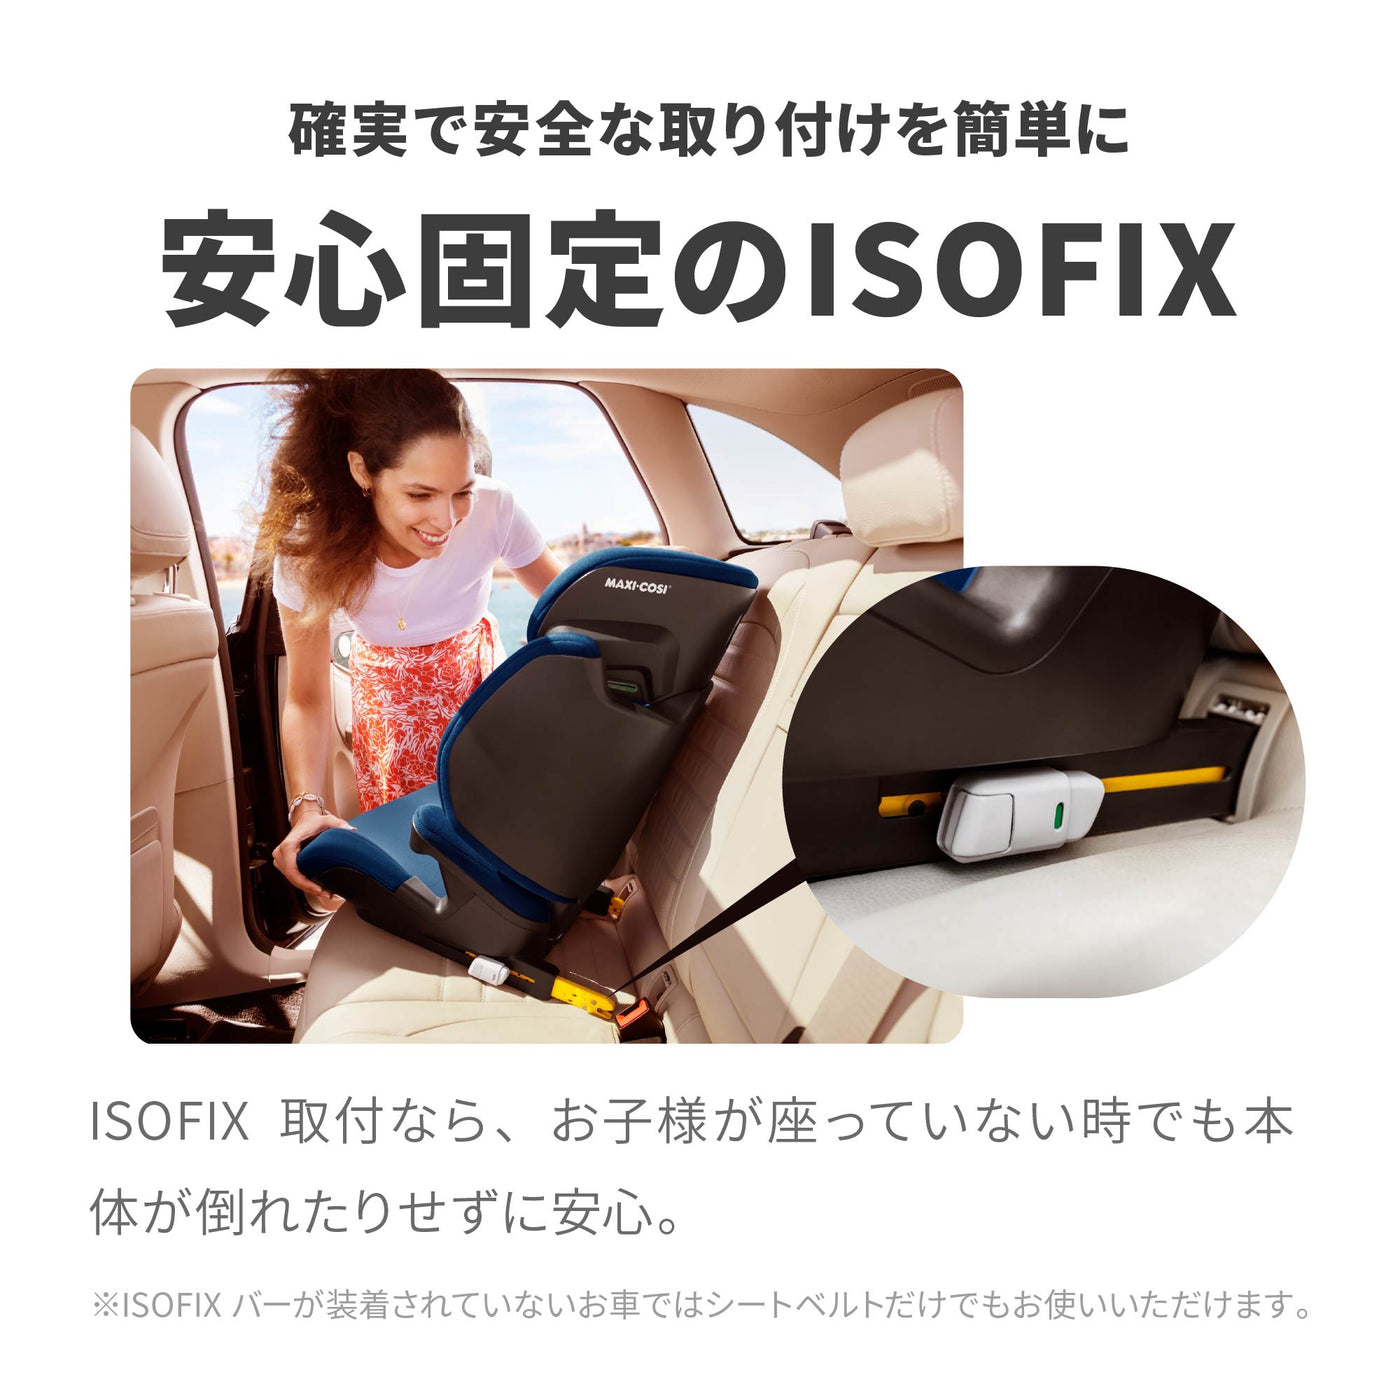 【確実で安全な取り付けを簡単に 安心固定のISOFIX】ISOFIX取付なら、お子様が座っていない時でも本体が倒れたりせずに安心。※ISOFIXバーが装着されていないお車ではシートベルトだけでもお使いいただけます。